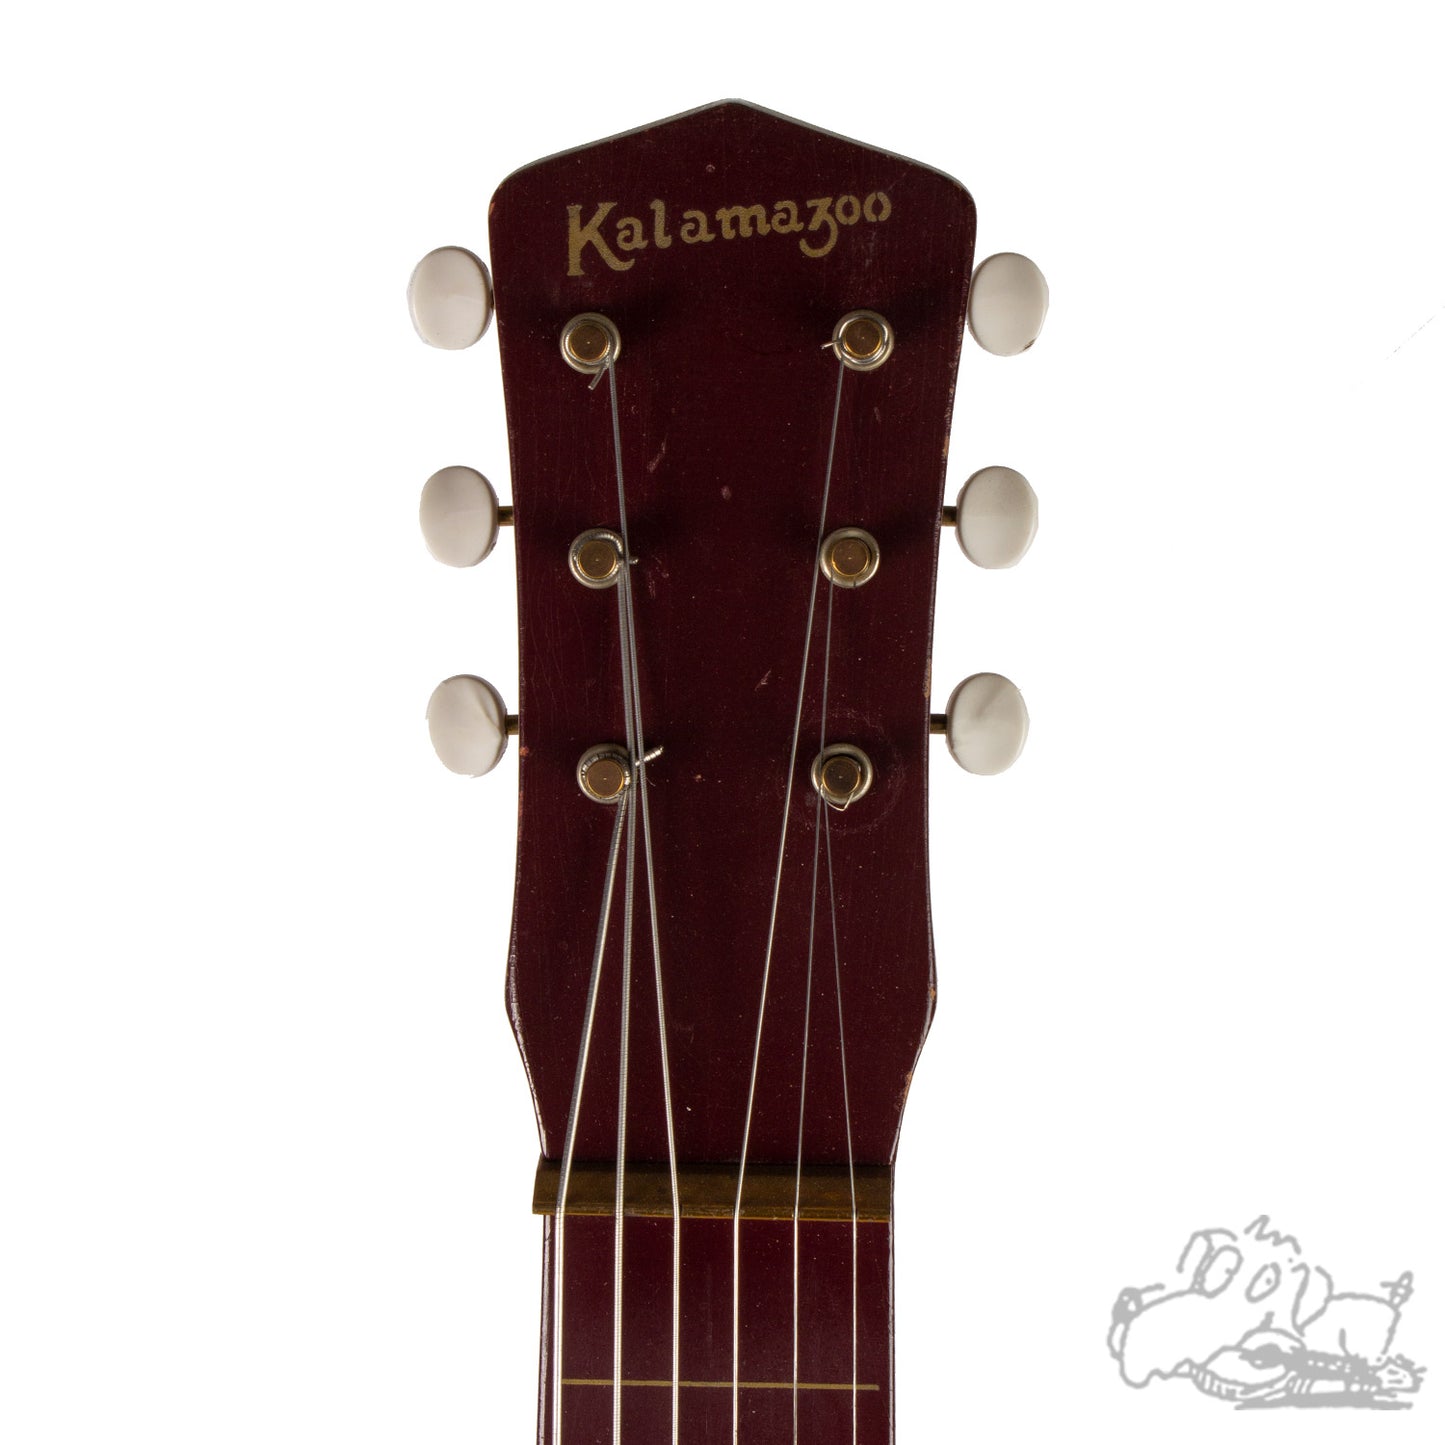 1940's Kalamazoo Lap Steel Guitar